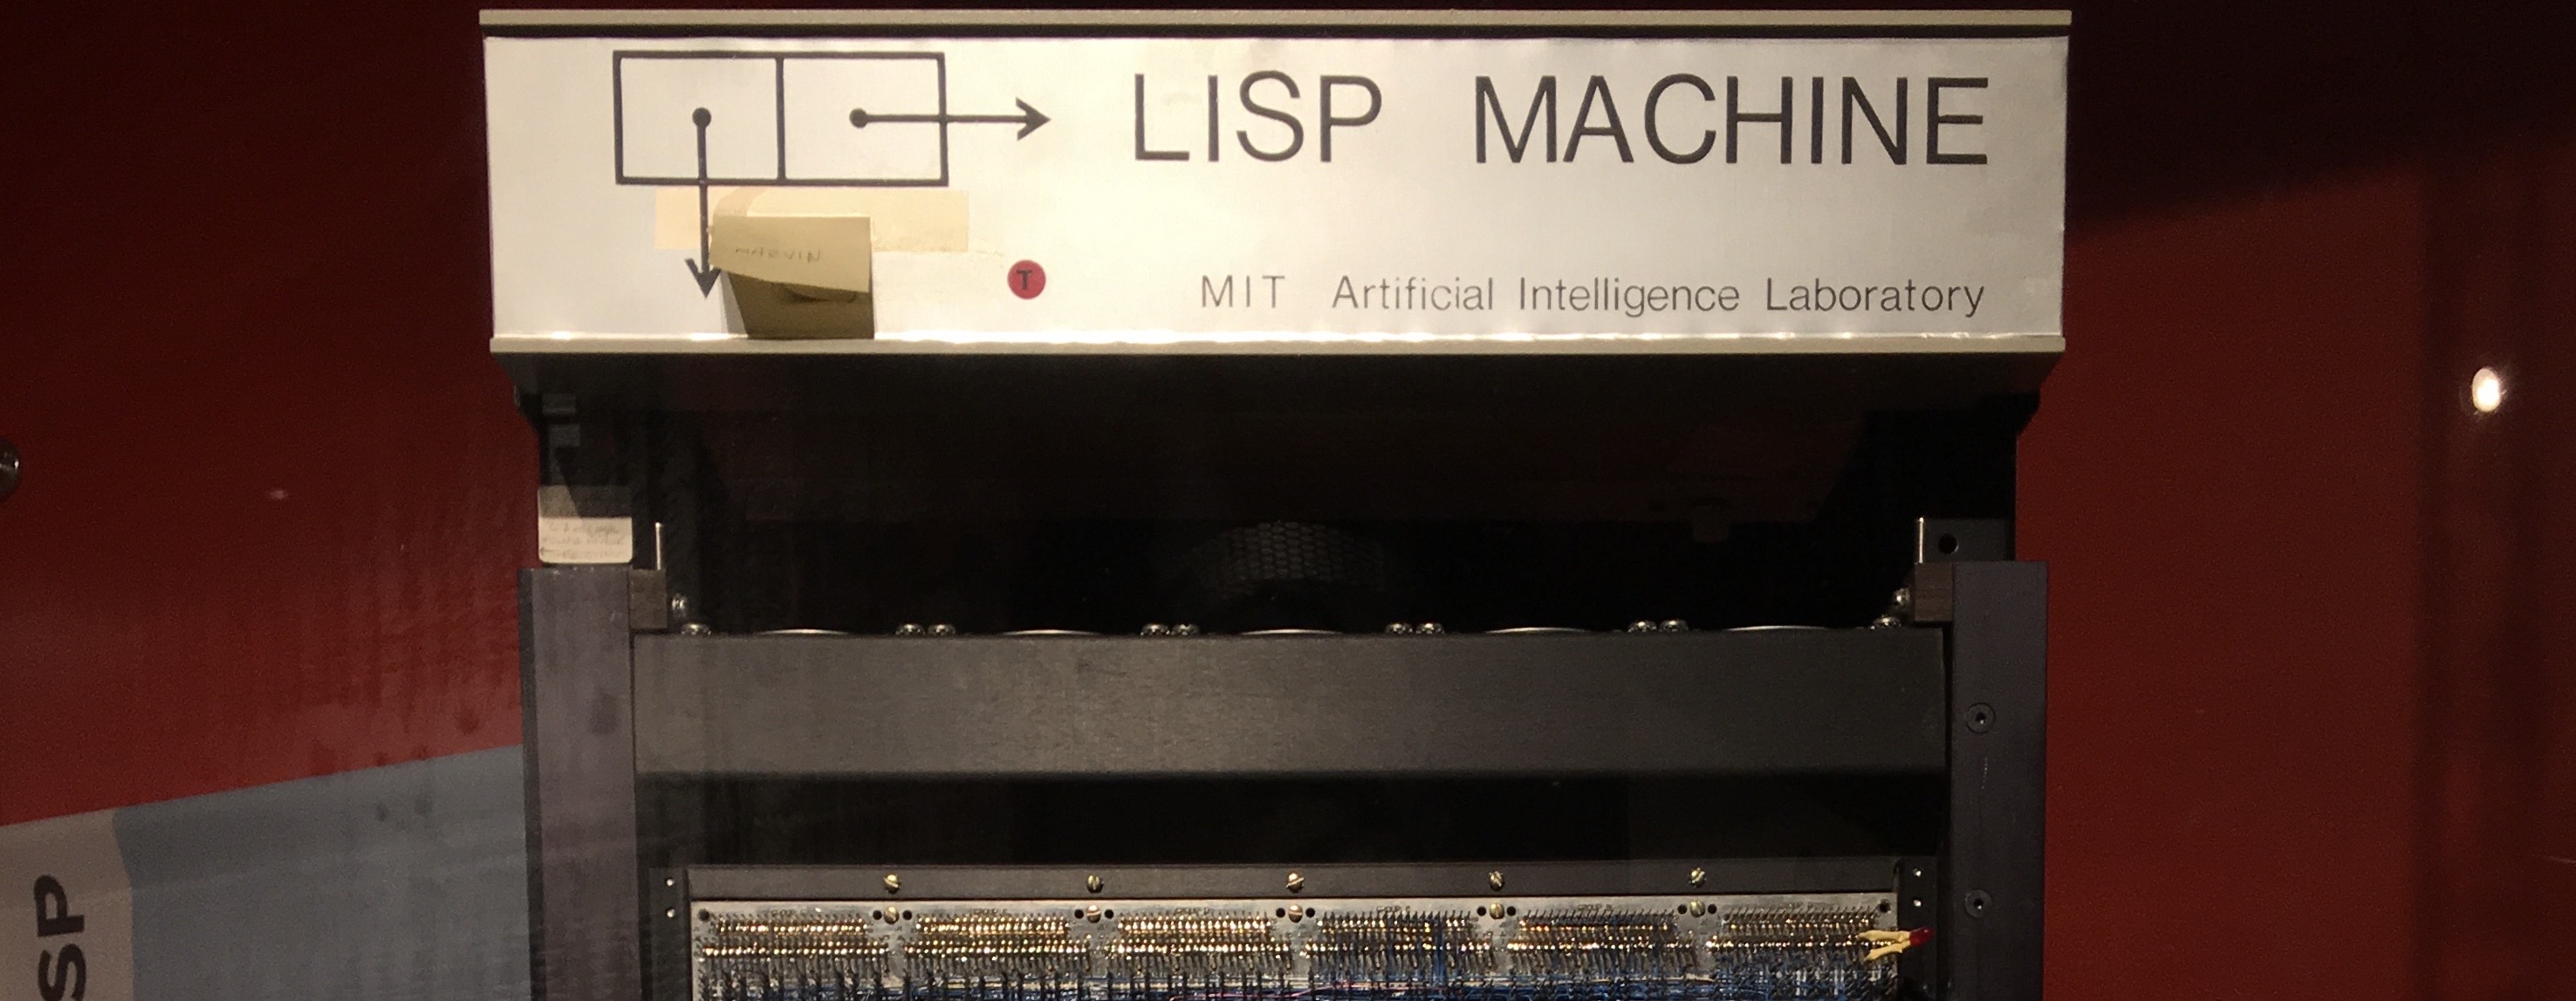 LISP machine at MIT.